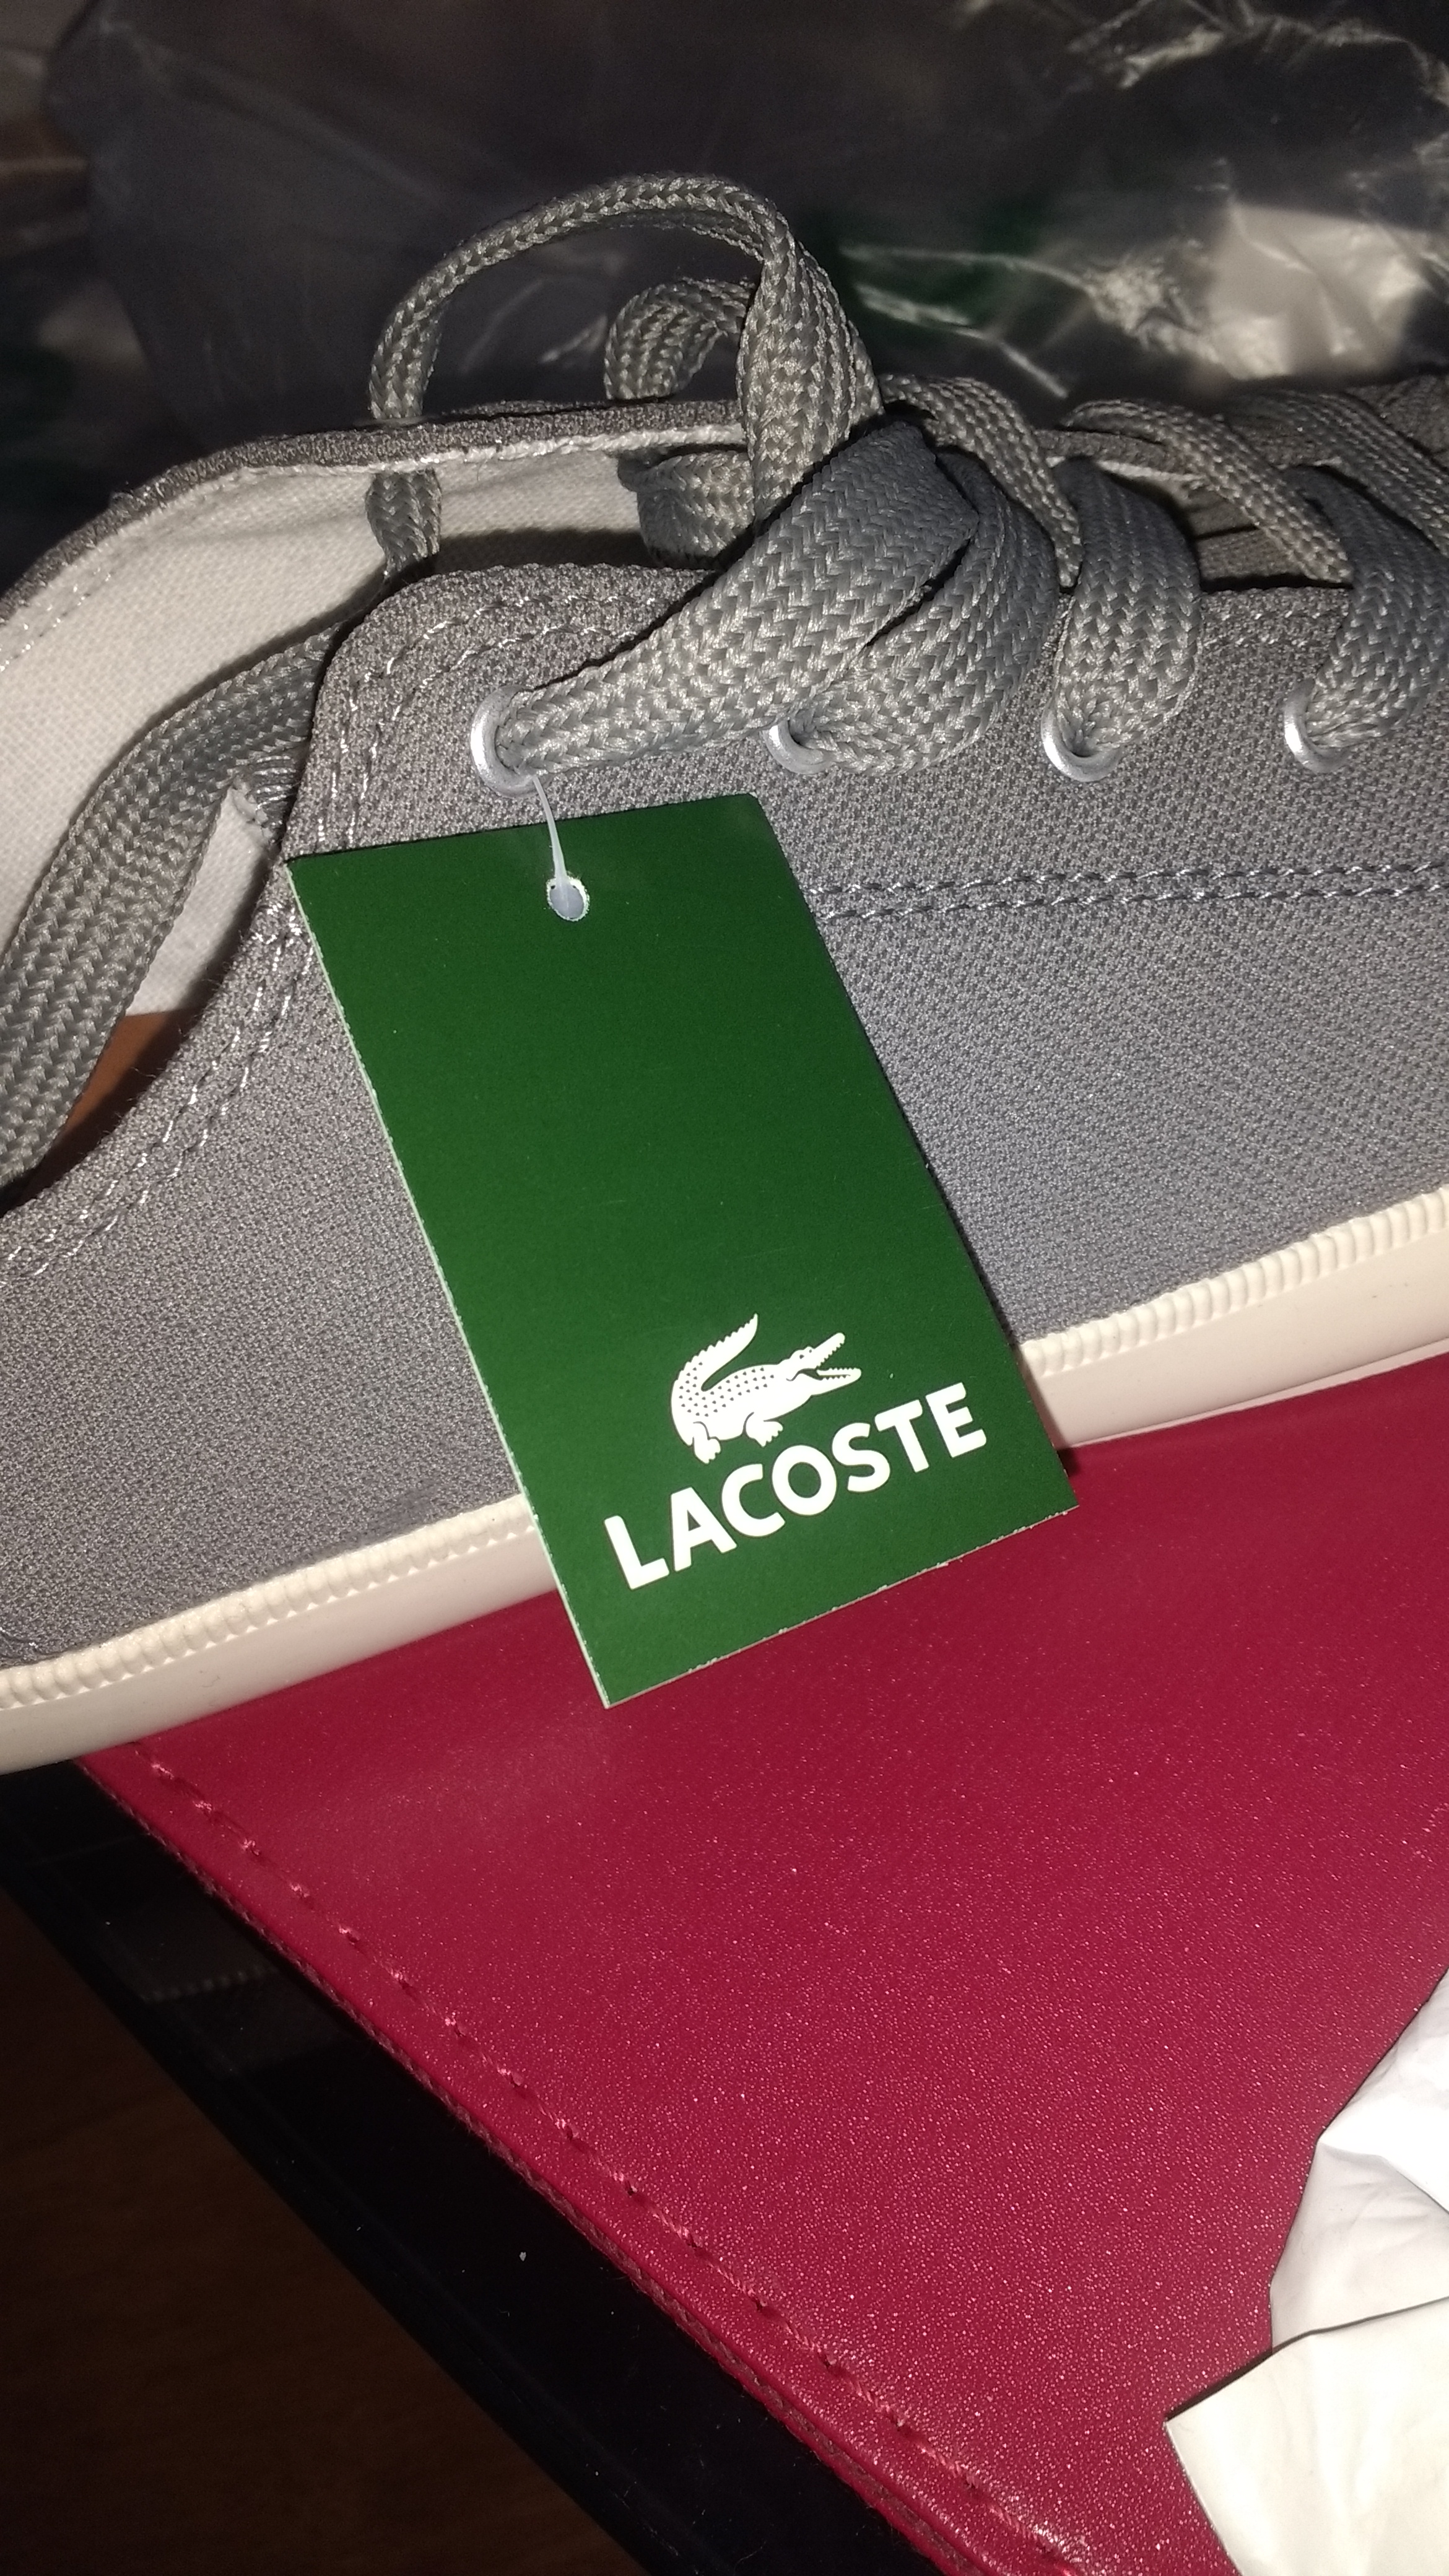 Fake Lacoste shoes | Styleforum